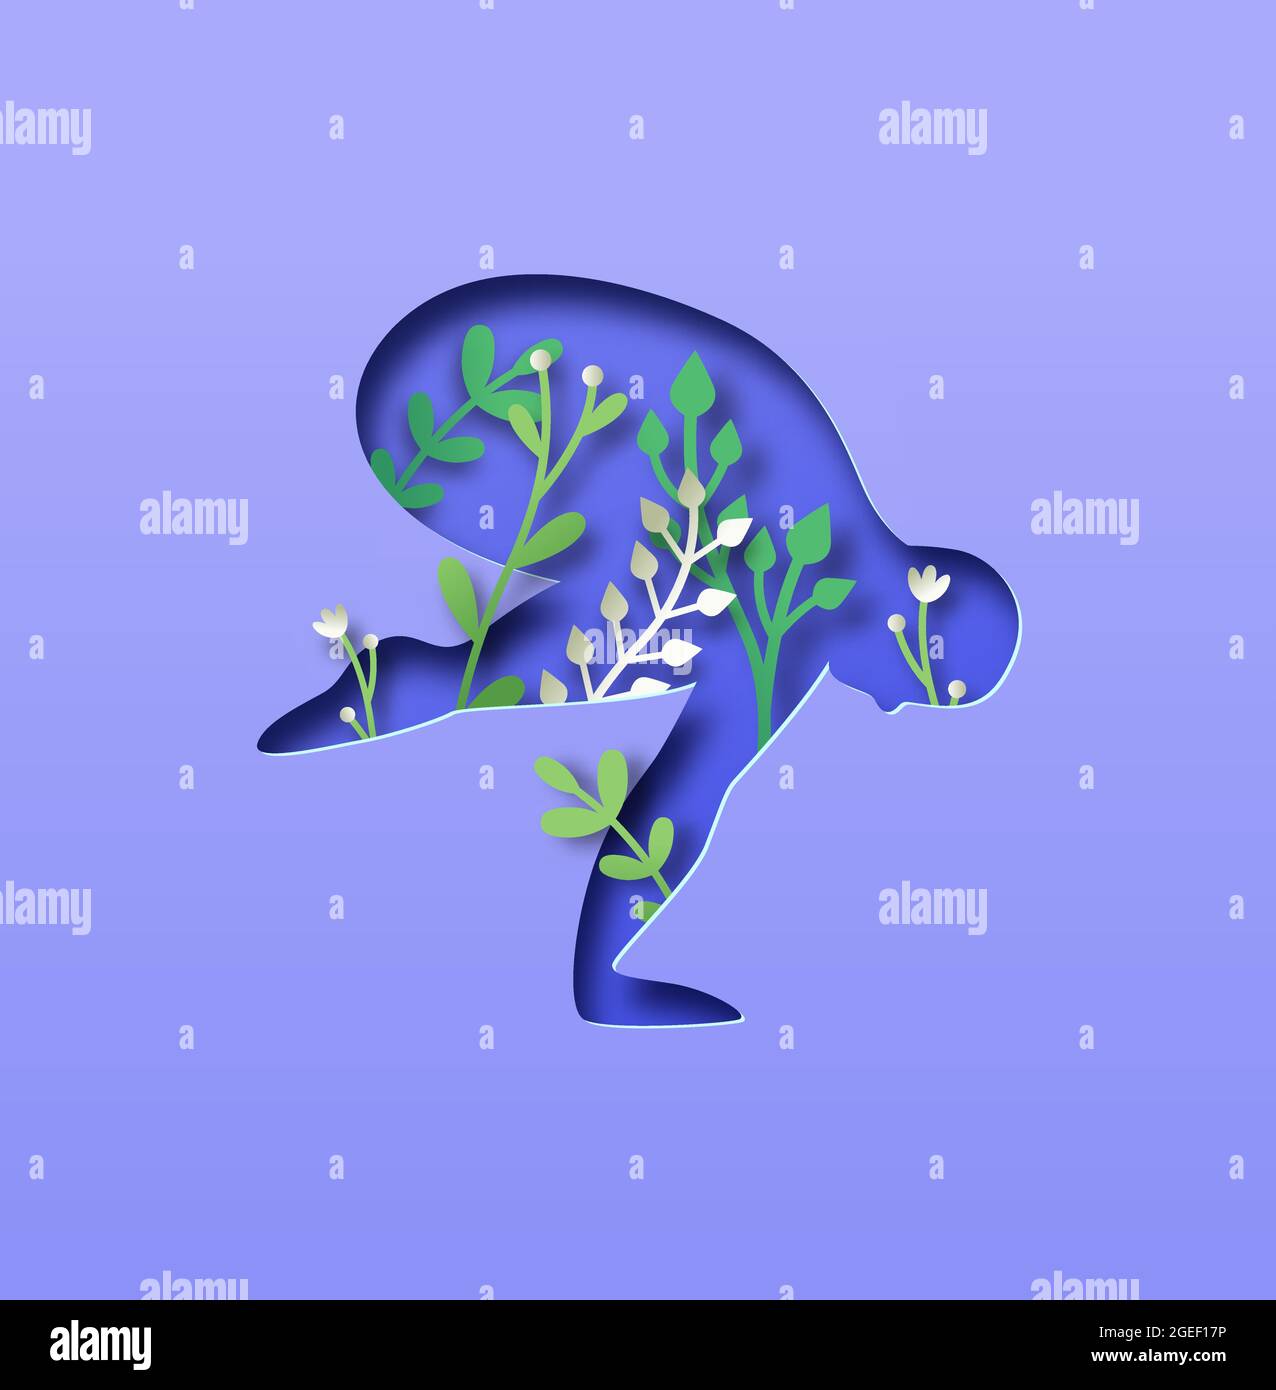 Papercut Mann Körper Silhouette tun Krähe Yoga Pose mit 3d-Papier geschnitten Pflanze Blatt und Blume. Nature Connection Konzept für einen gesunden Lebensstil oder friedlich Stock Vektor